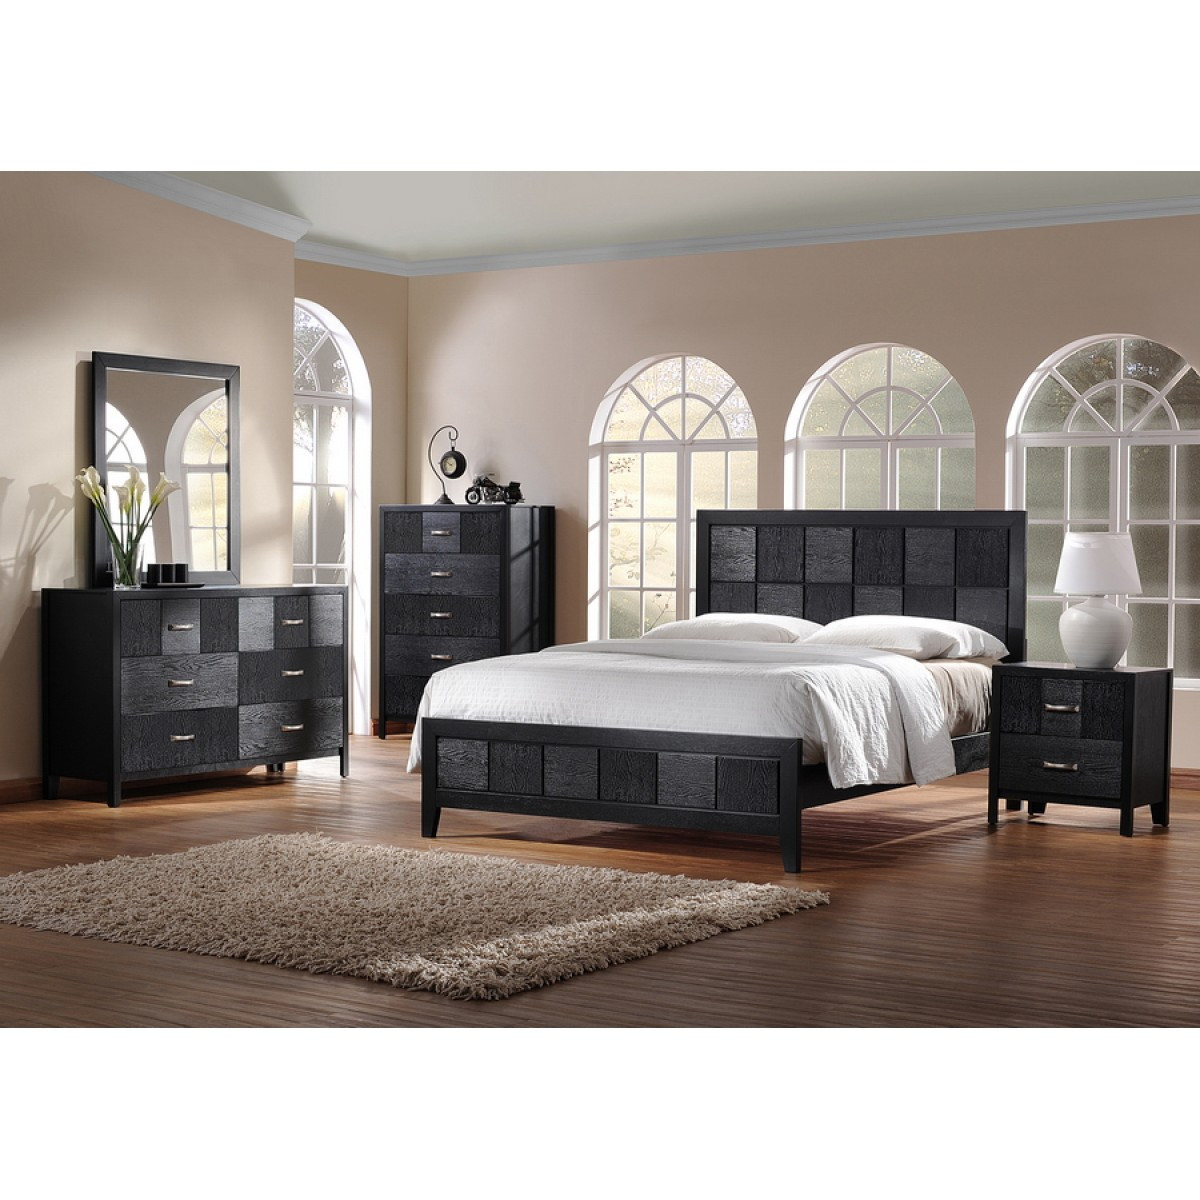 Modern Black Bedroom Set
 Montserrat Black Wood 5 Piece King Size Modern Bedroom Set